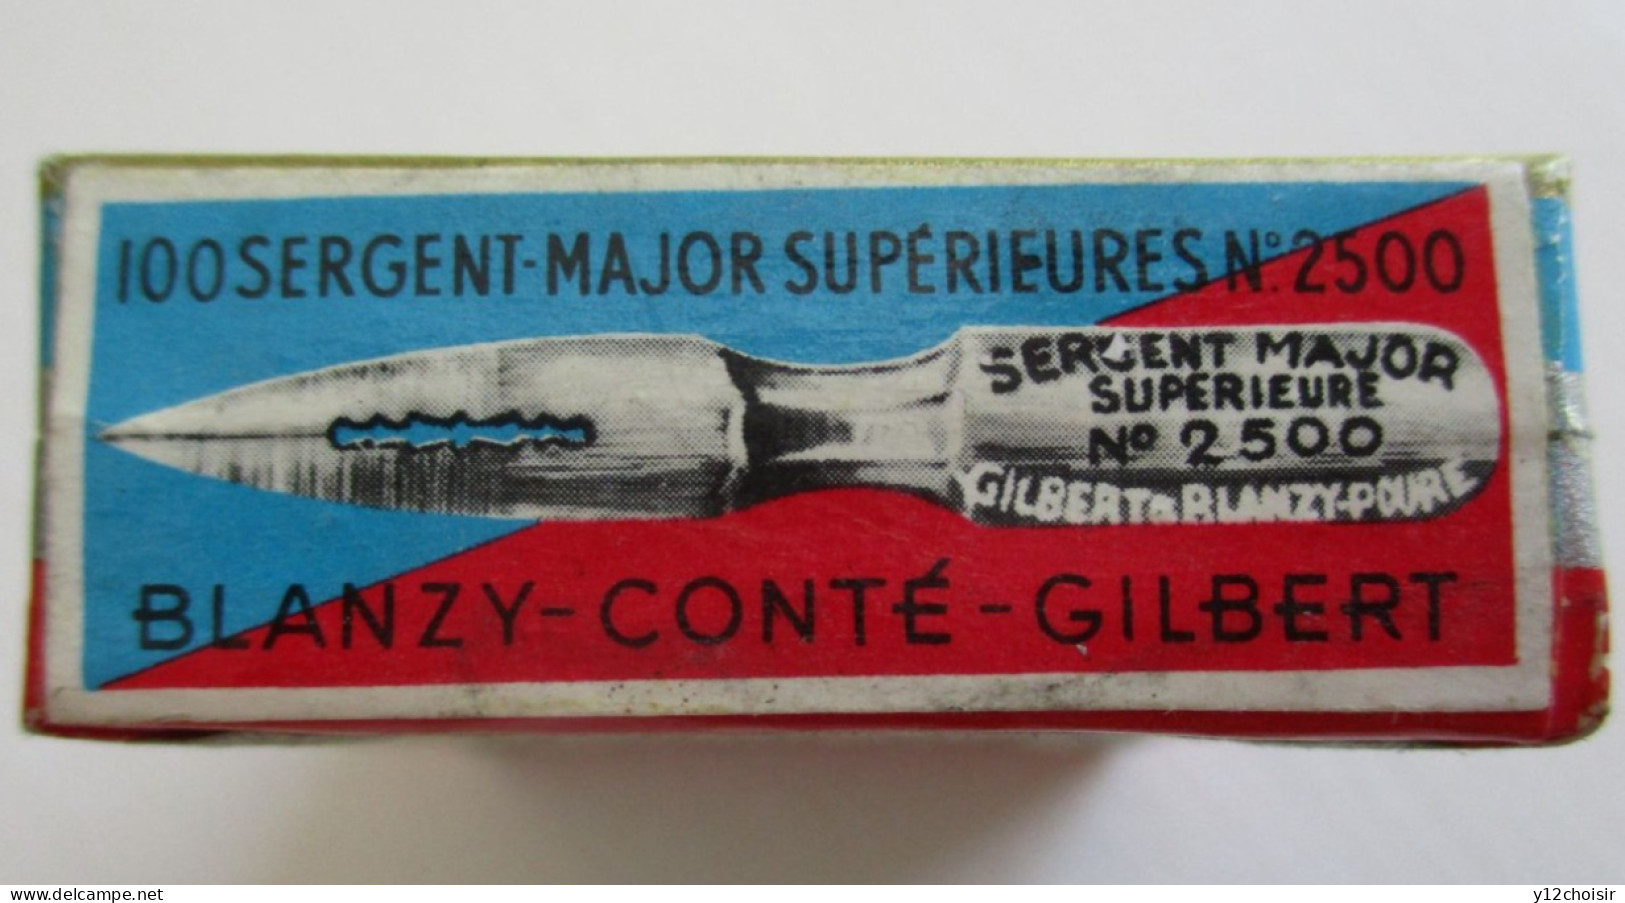 BOITE NEUVE 100 PLUMES SERGENT MAJOR SUPERIEURE BLANZY-CONTE-GILBERT  " BATAILLE DE FLEURUS 1794 " - Pens